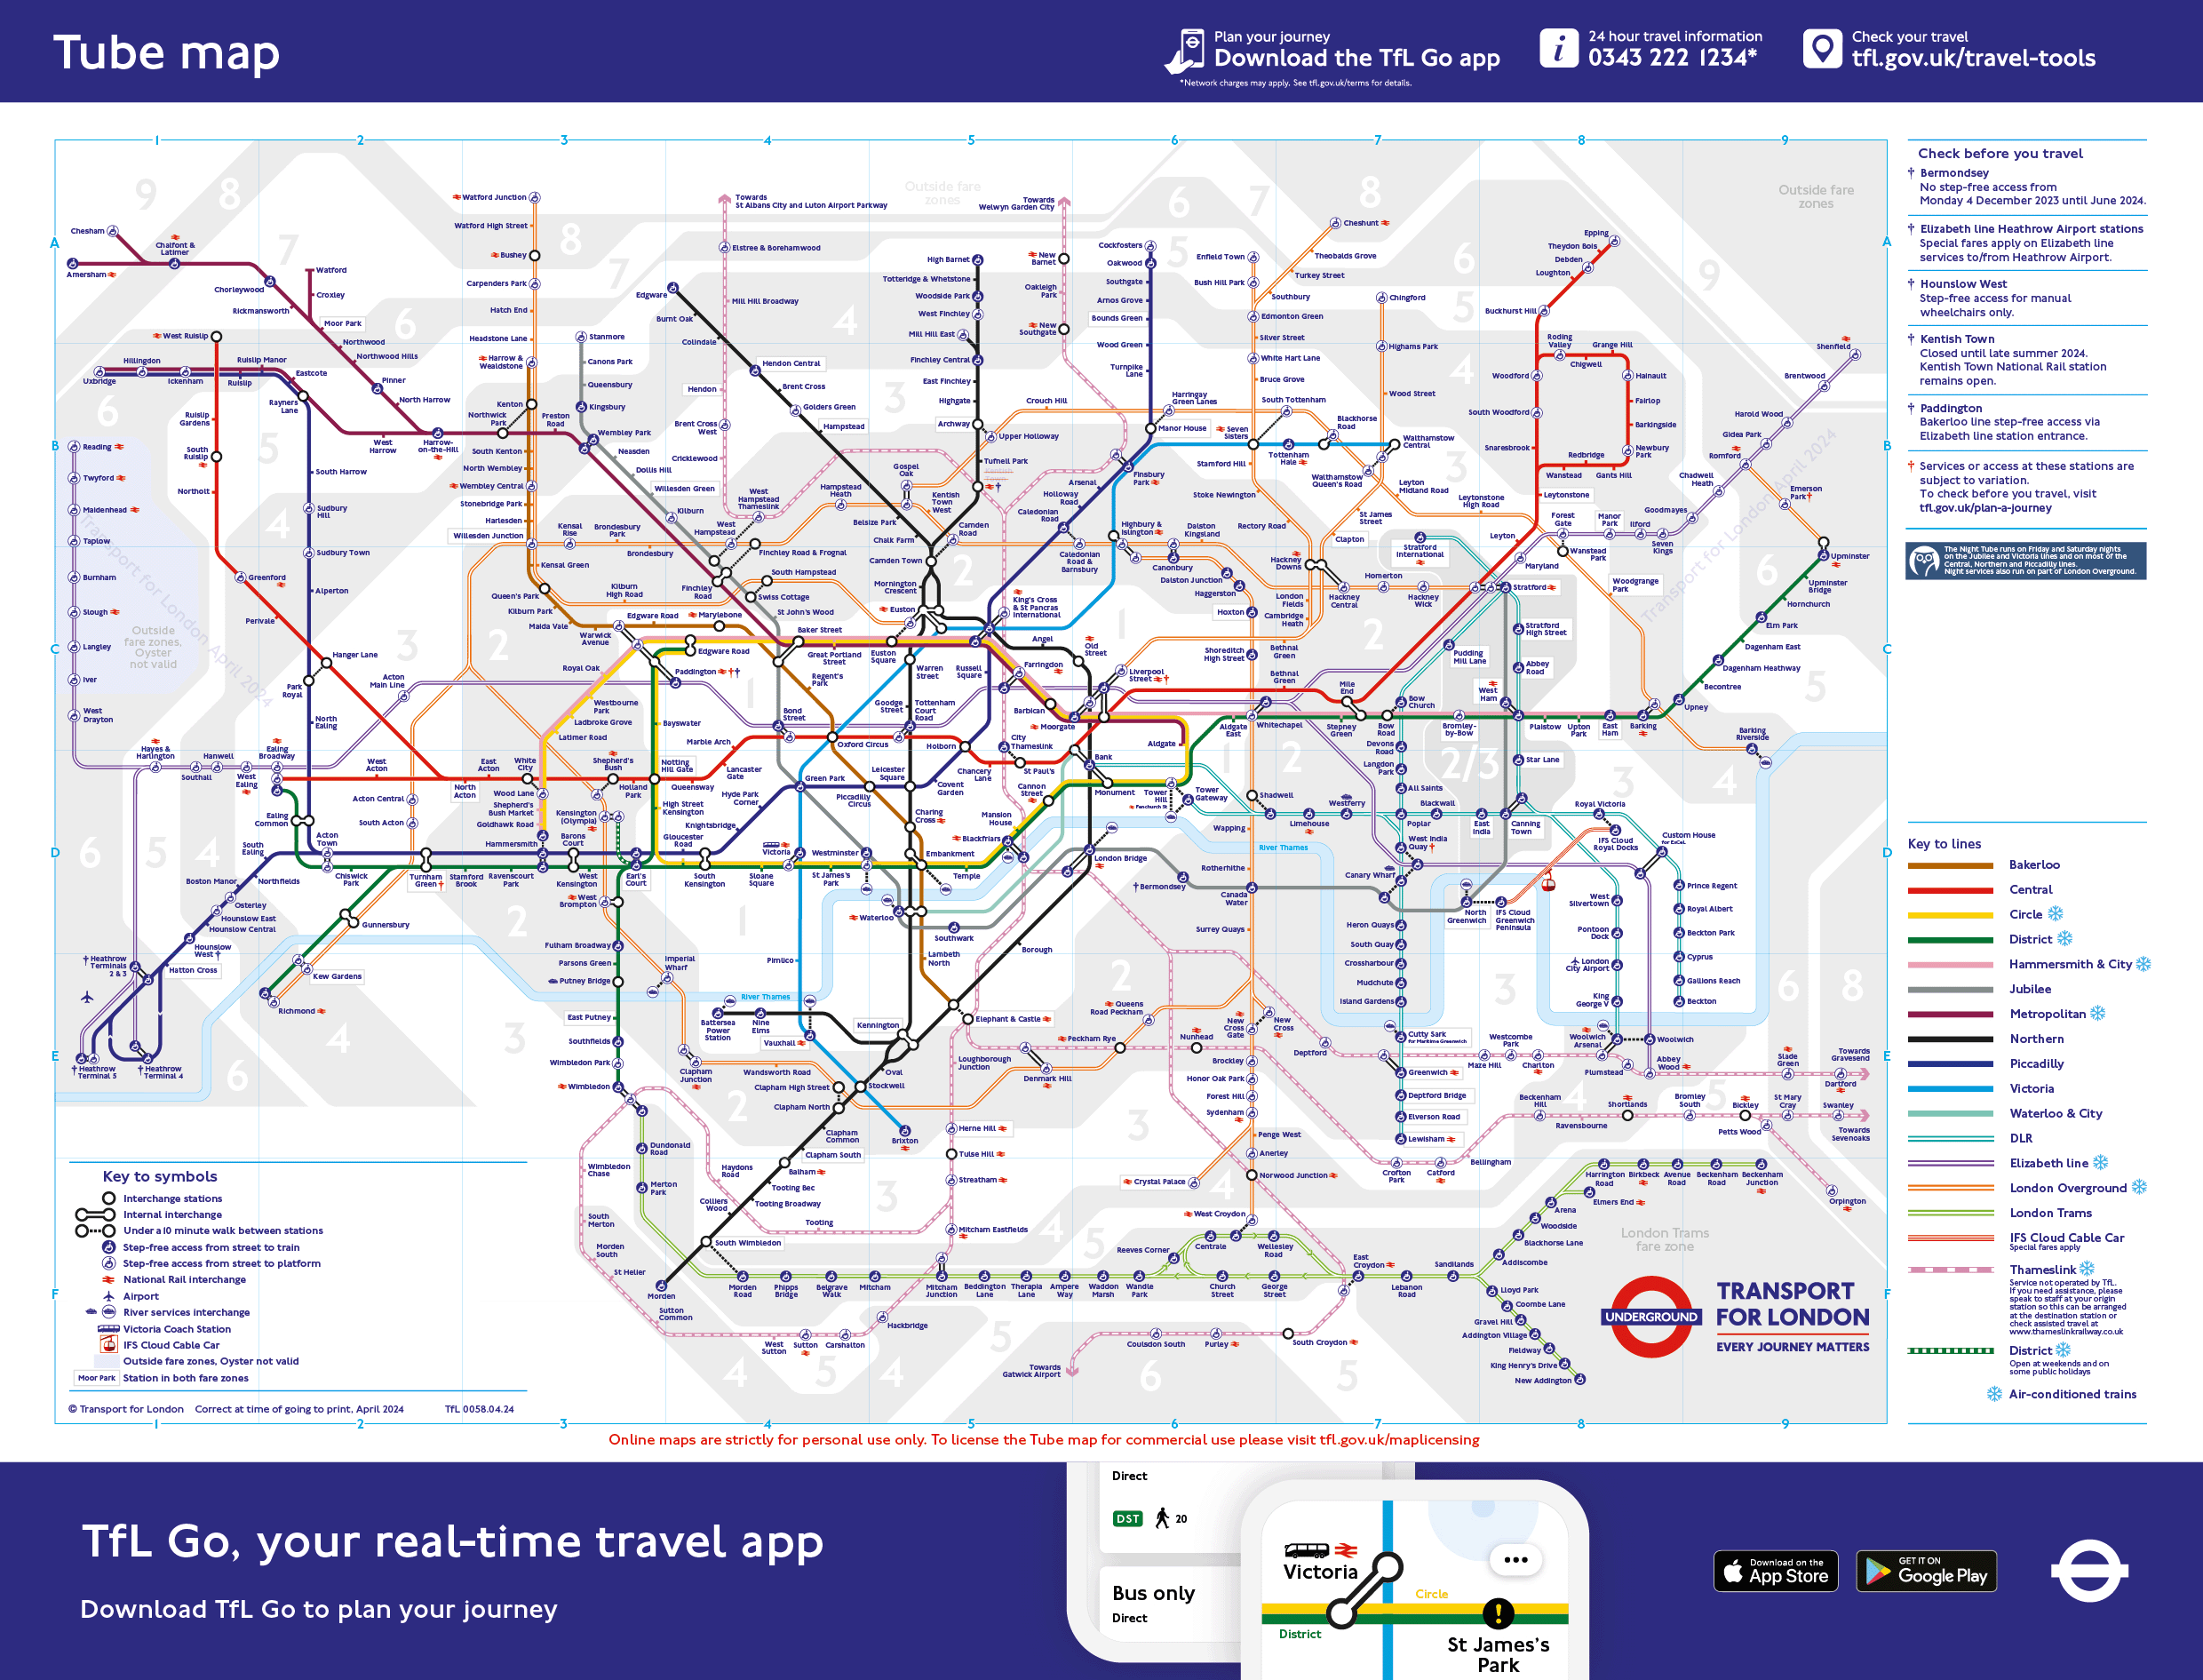 London tube map. Source: [TfL](https://tfl.gov.uk/maps/track/tube)